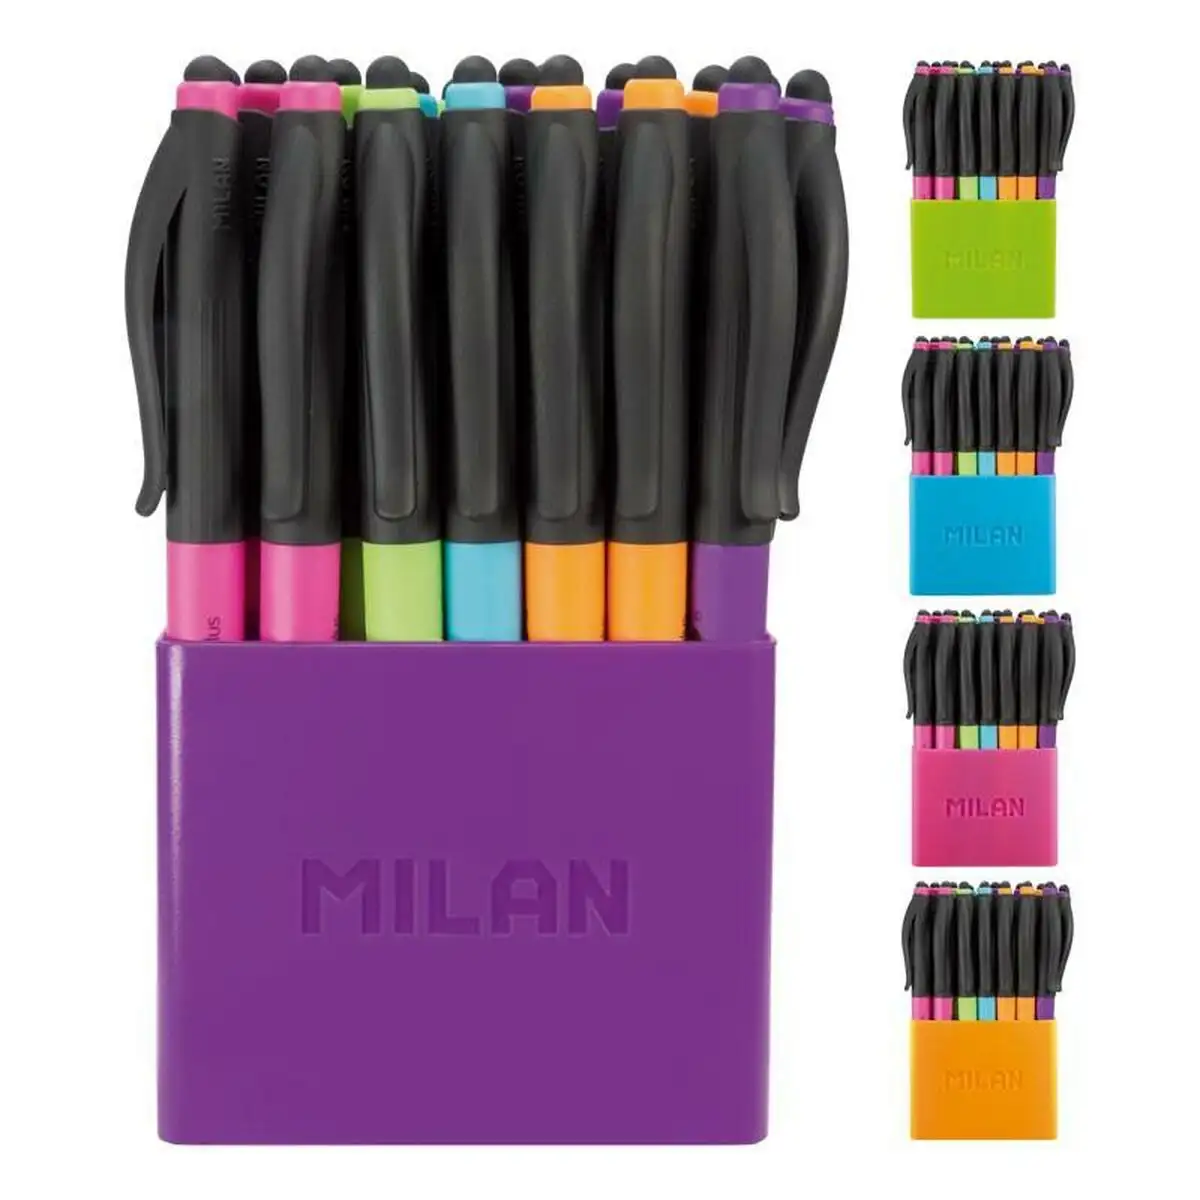 Ensemble de stylos milan p1 stylus colours 24 pieces 1 mm_8089. DIAYTAR SENEGAL - L'Art de Choisir, l'Art de S'émerveiller. Explorez notre boutique en ligne et choisissez des articles qui éveillent votre sens de l'émerveillement.